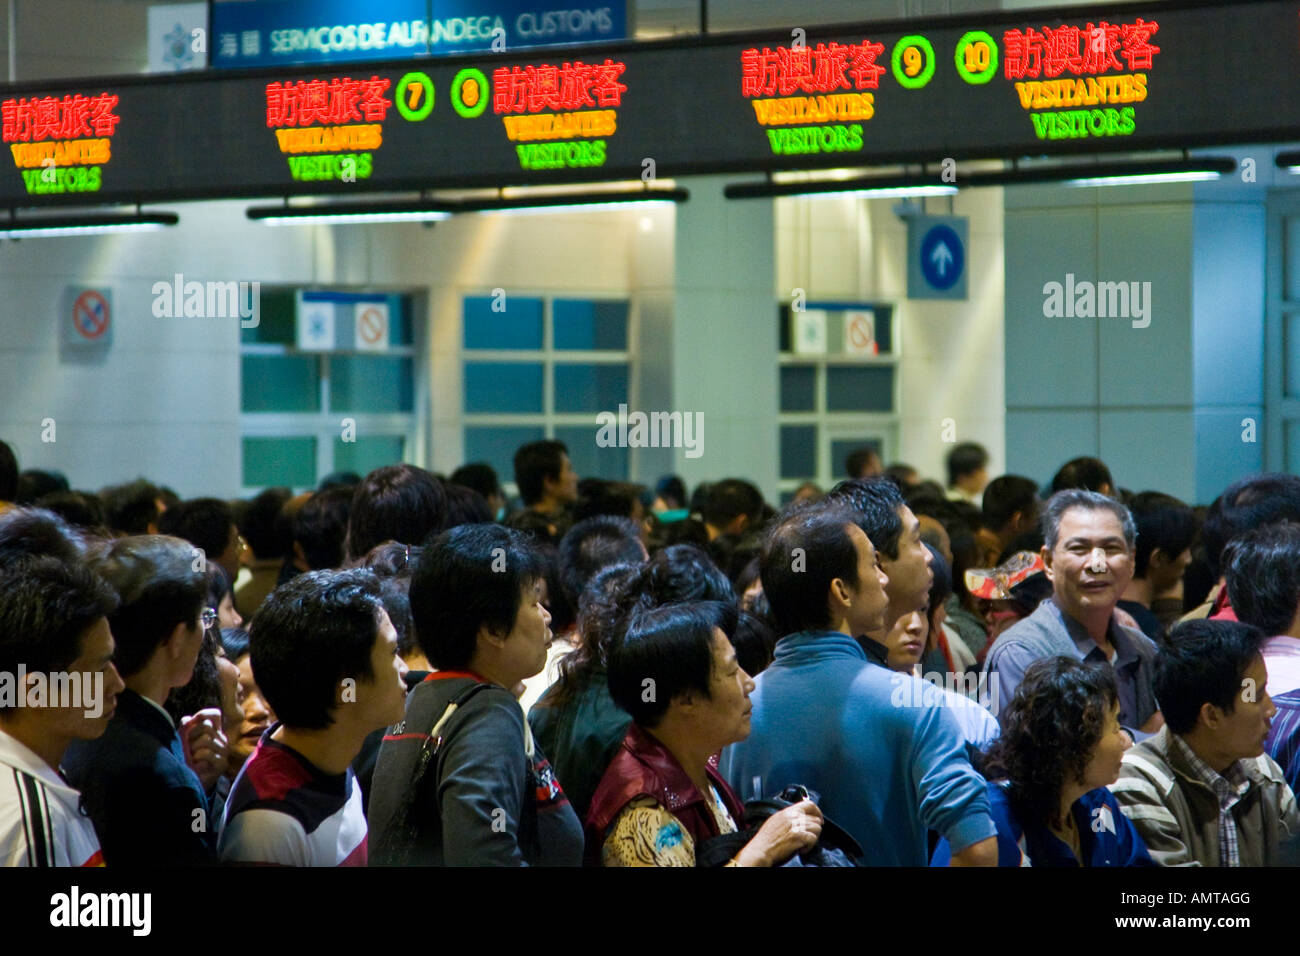 Les gens attendent pour entrer chinois Macao au passage de la frontière entre Macao et Zhuhai Chine sur un week-end Normal Banque D'Images